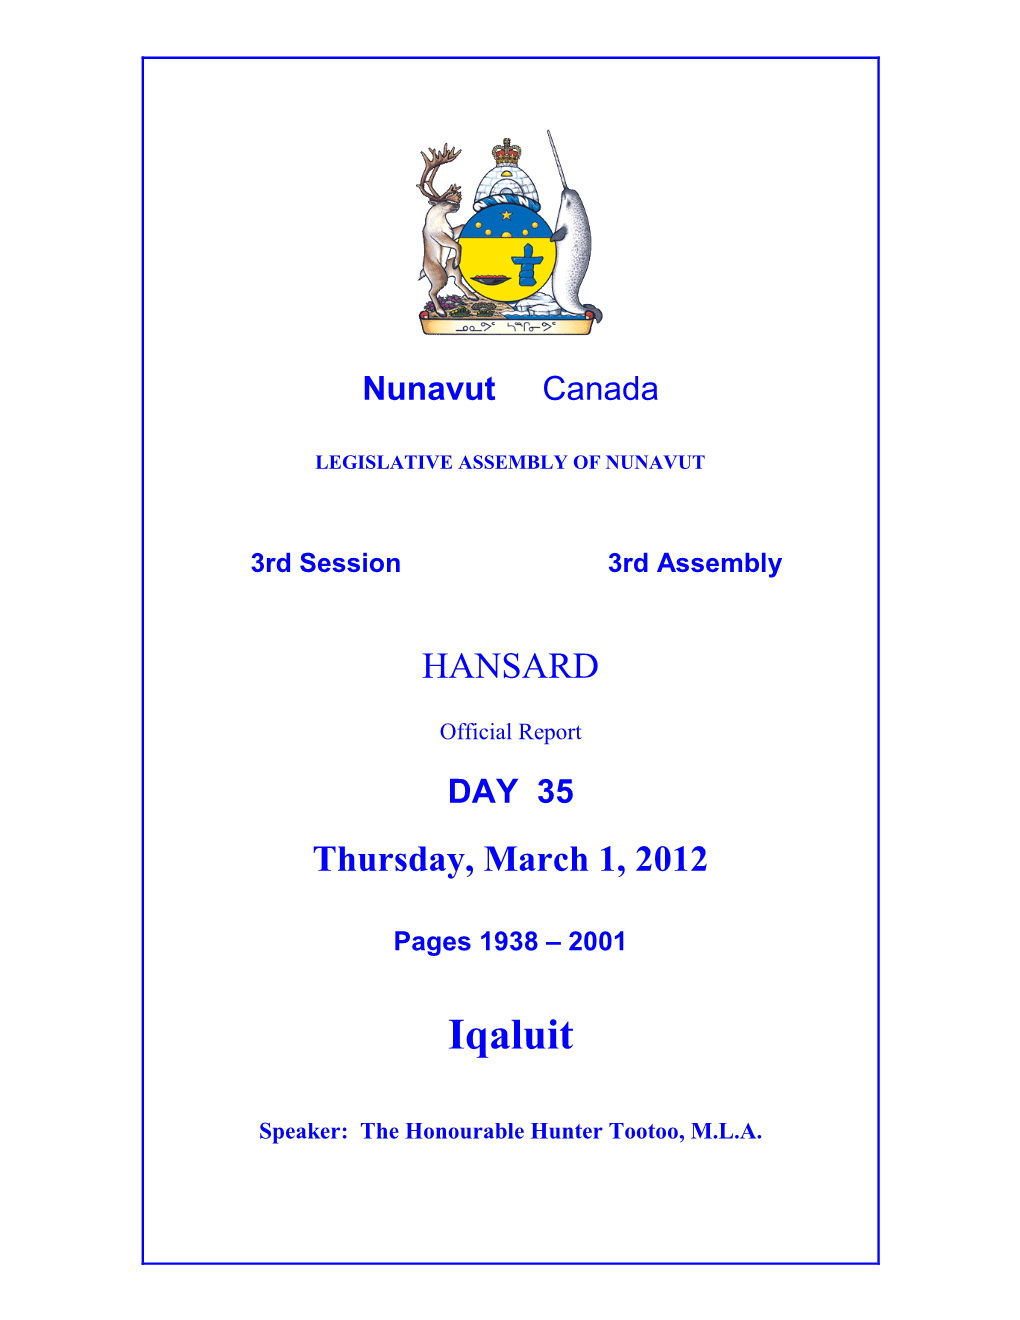 Nunavut Hansard 1938